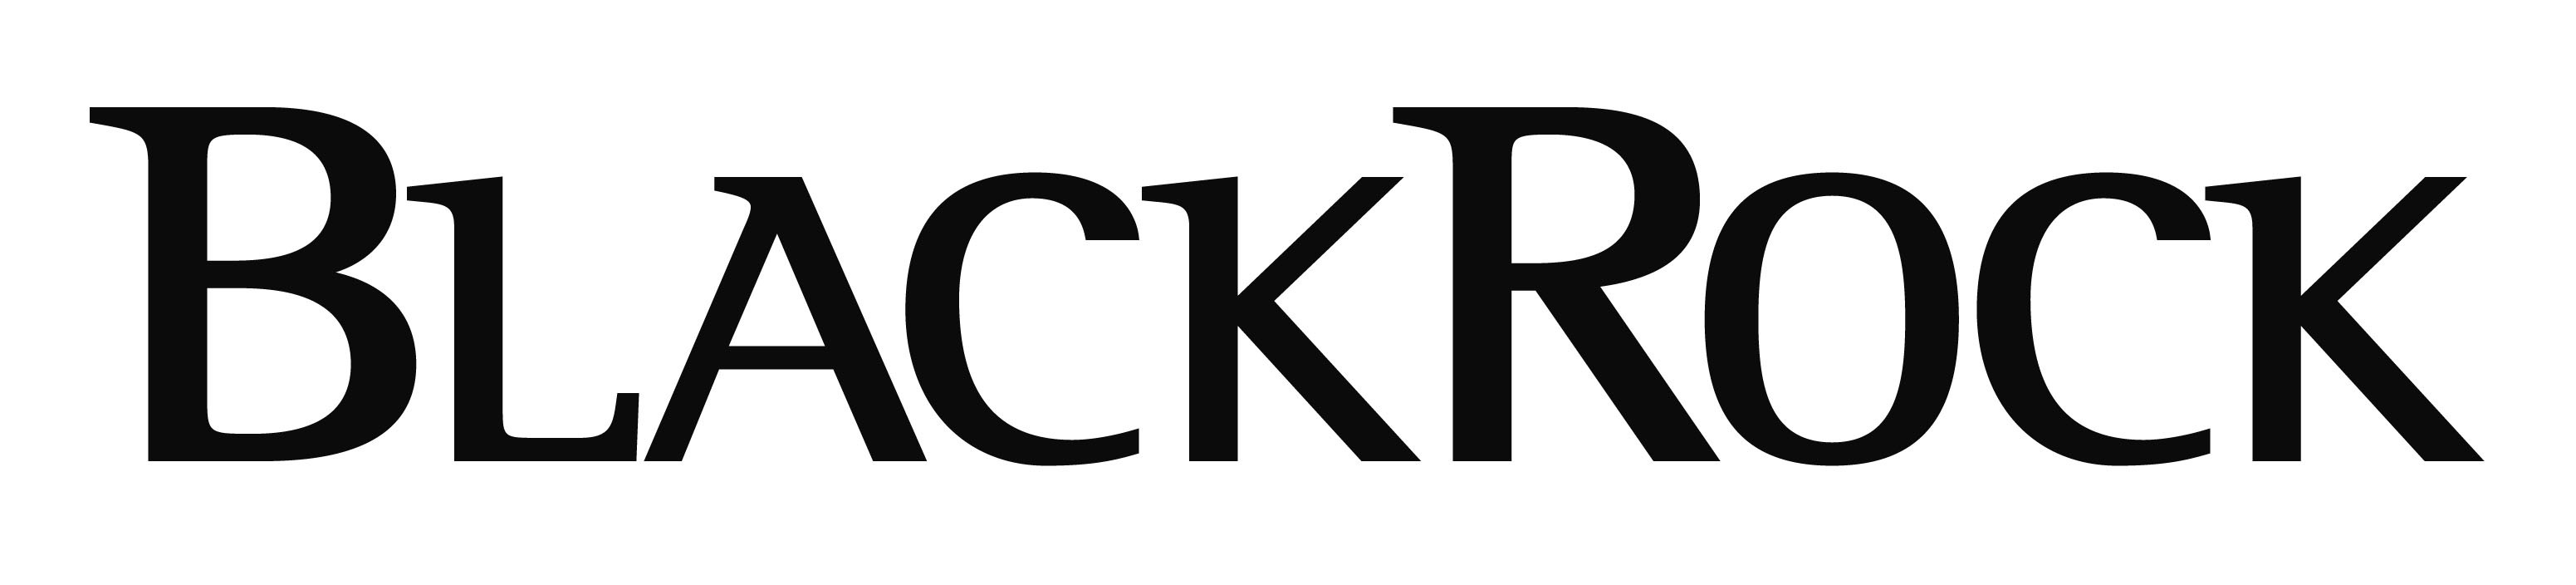 Blackrock Brand Logo